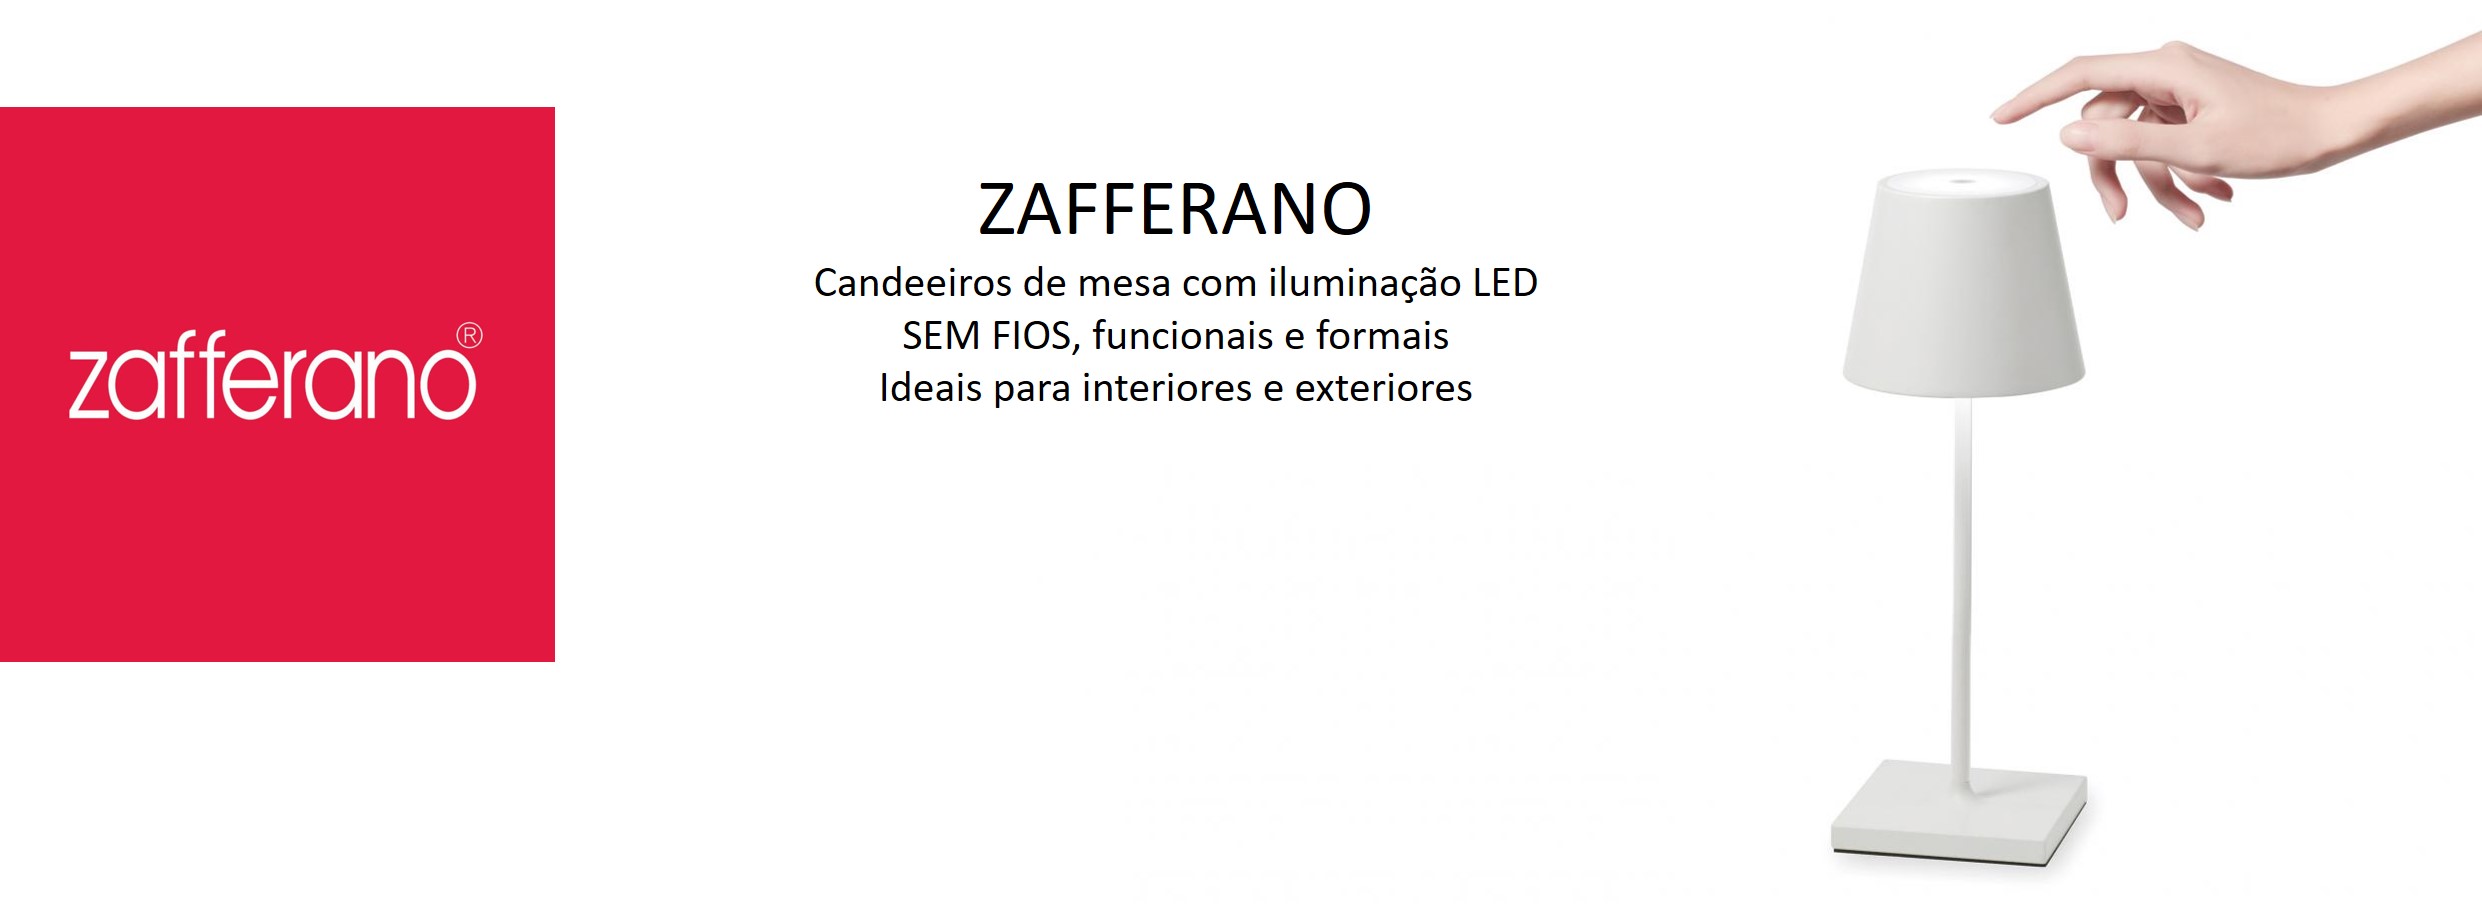 Zafferano wireless lamps